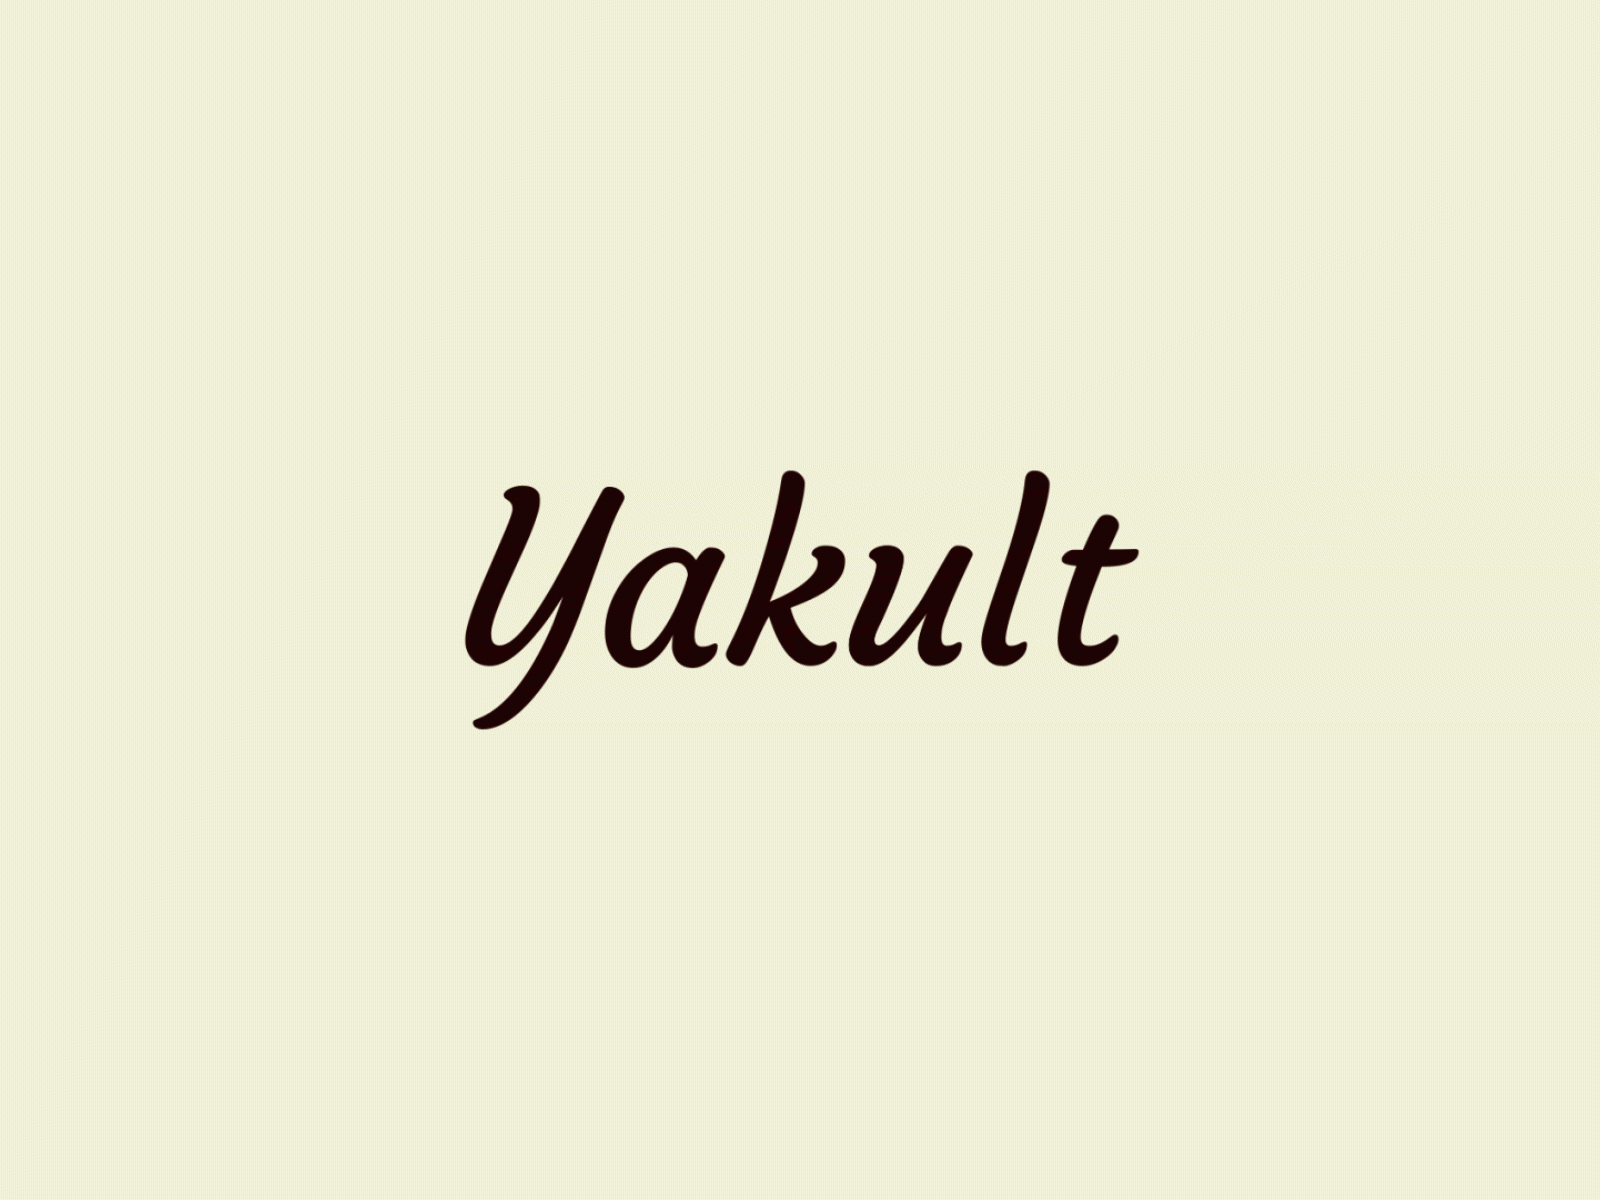 Yakult logo animation